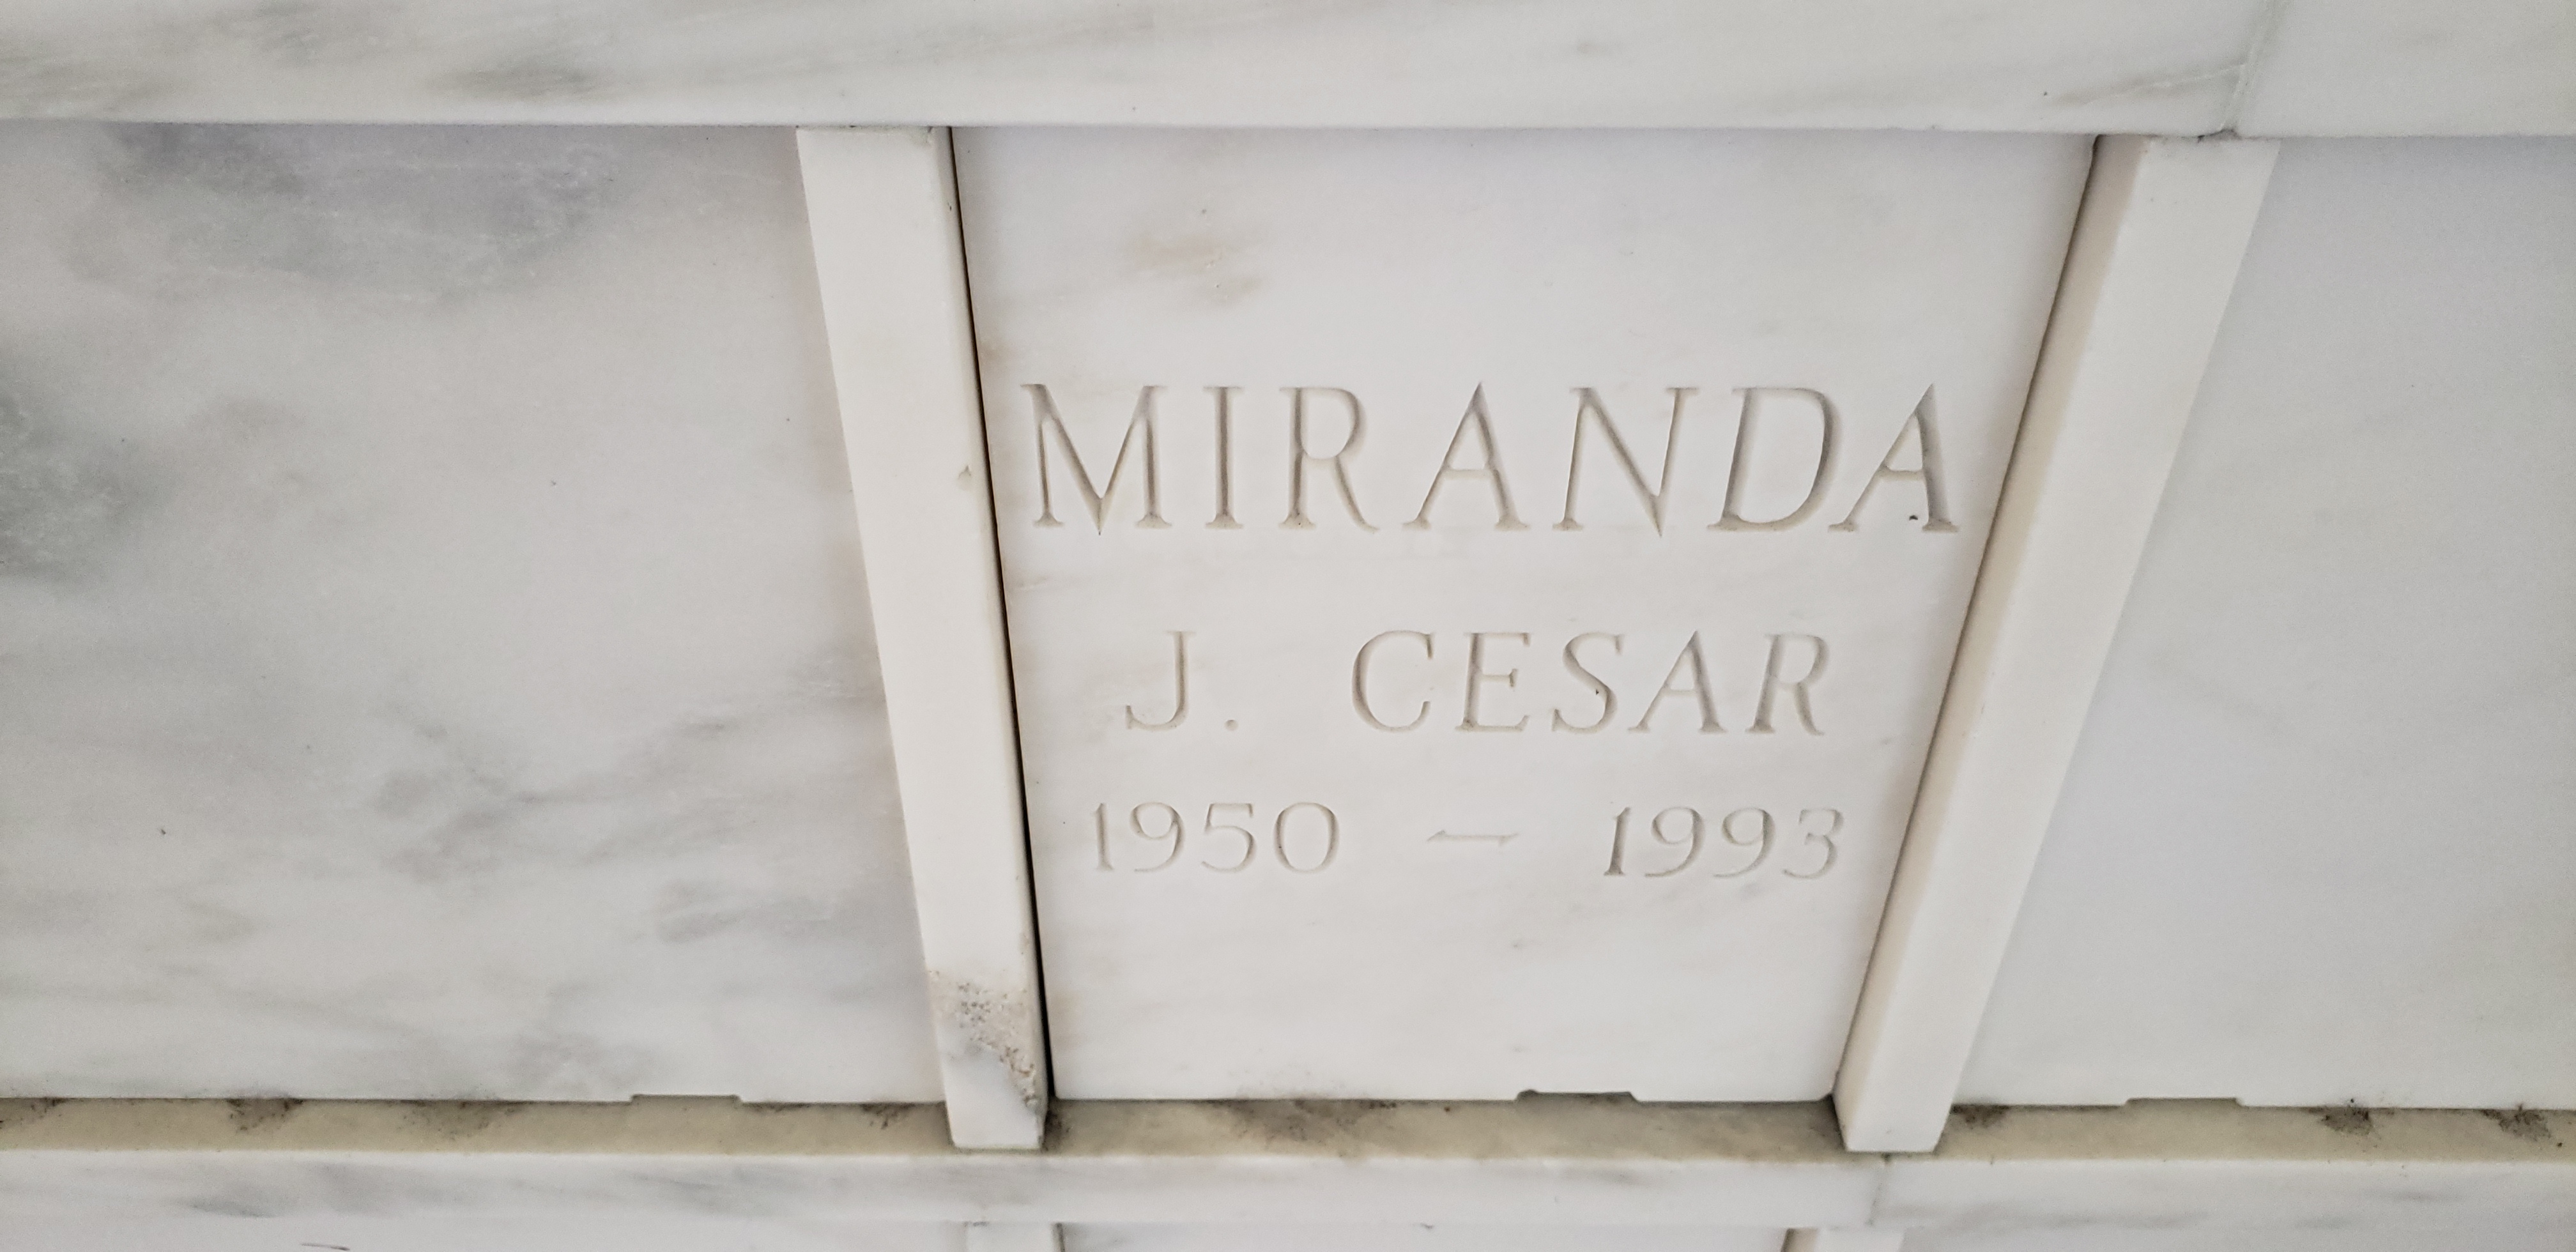 J Cesar Miranda